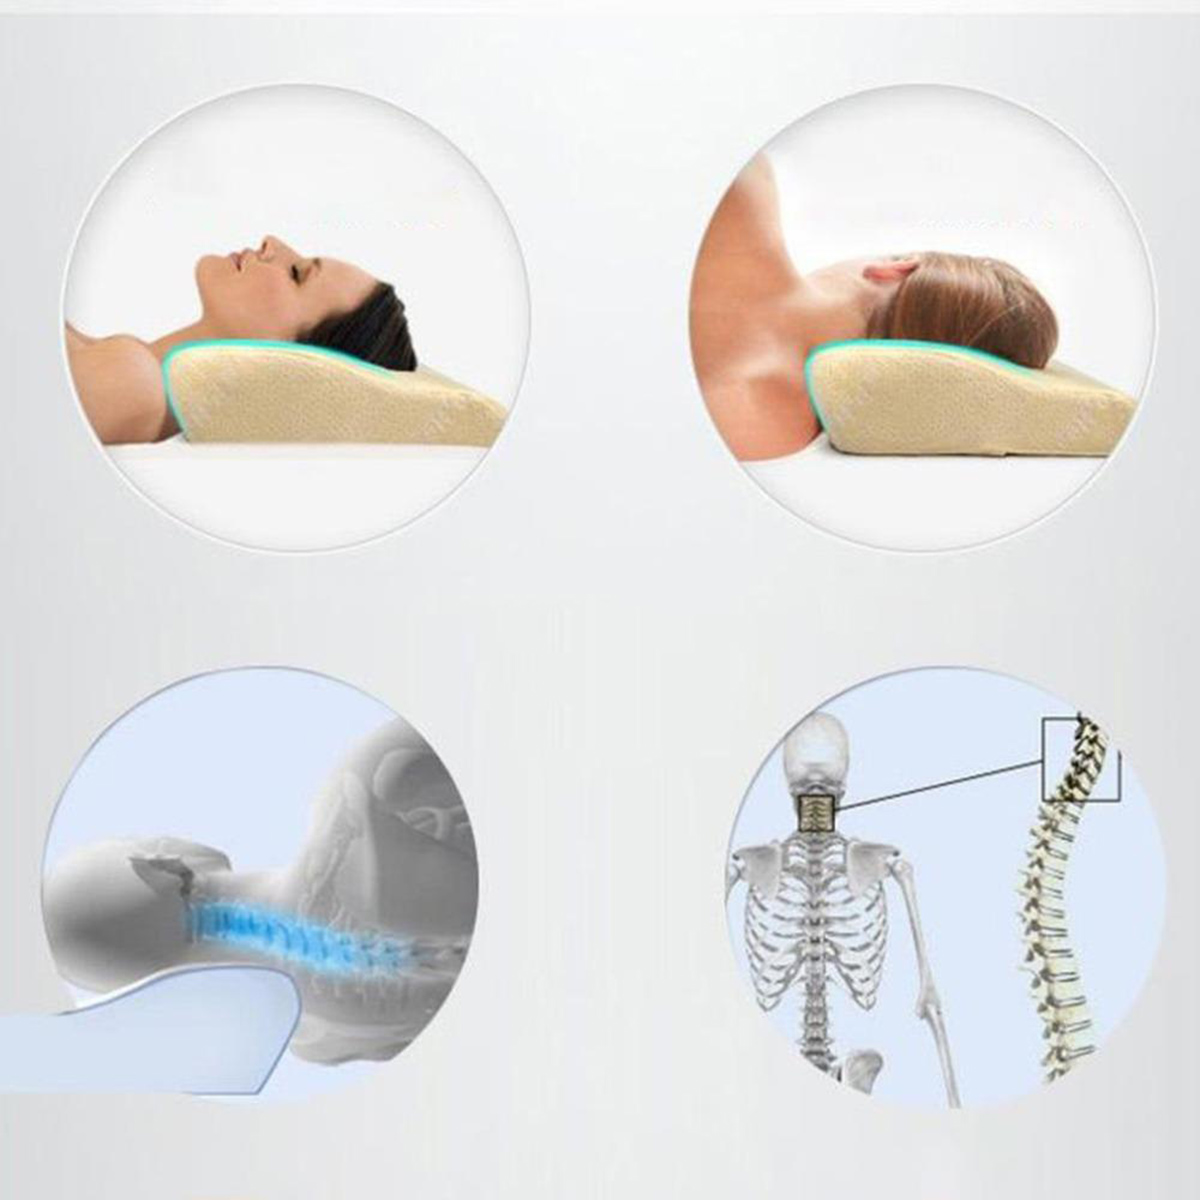 Спать без подушки при шейном. Ортопедическая подушка для шеи при остеохондрозе. Ортопедическая подушка при шейном остеохондрозе. Ортопедические подушки для сна при остеохондрозе. Правильная ортопедическая подушка.